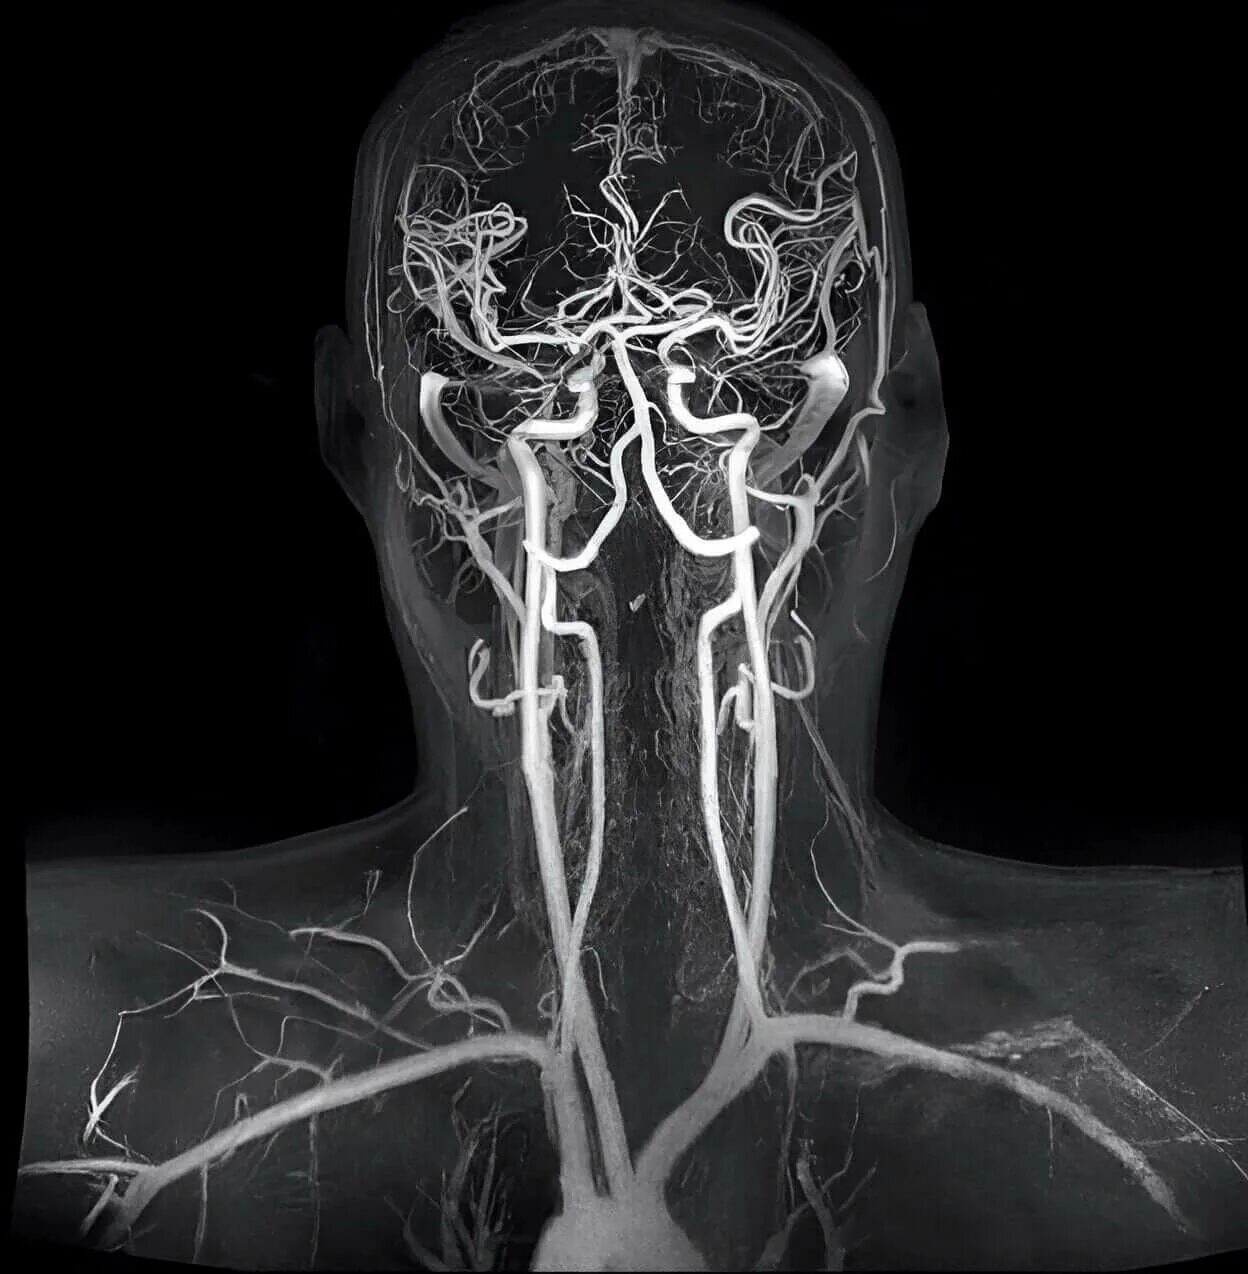 Венография головного мозга. Кт ангиография брахиоцефальных артерий. Мрт ангиография артерий головного мозга. МР-ангиография сосудов головного мозга. Компьютерно-томографическая ангиография сосудов головного мозга.